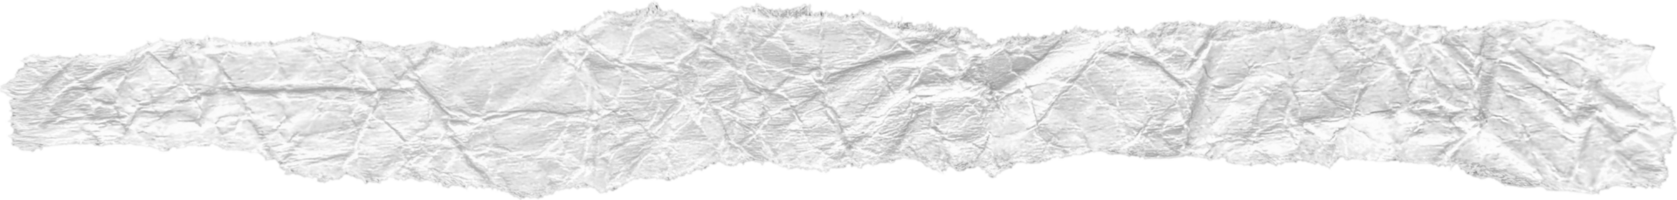 blanco rasgado estropeado papel pedazo png